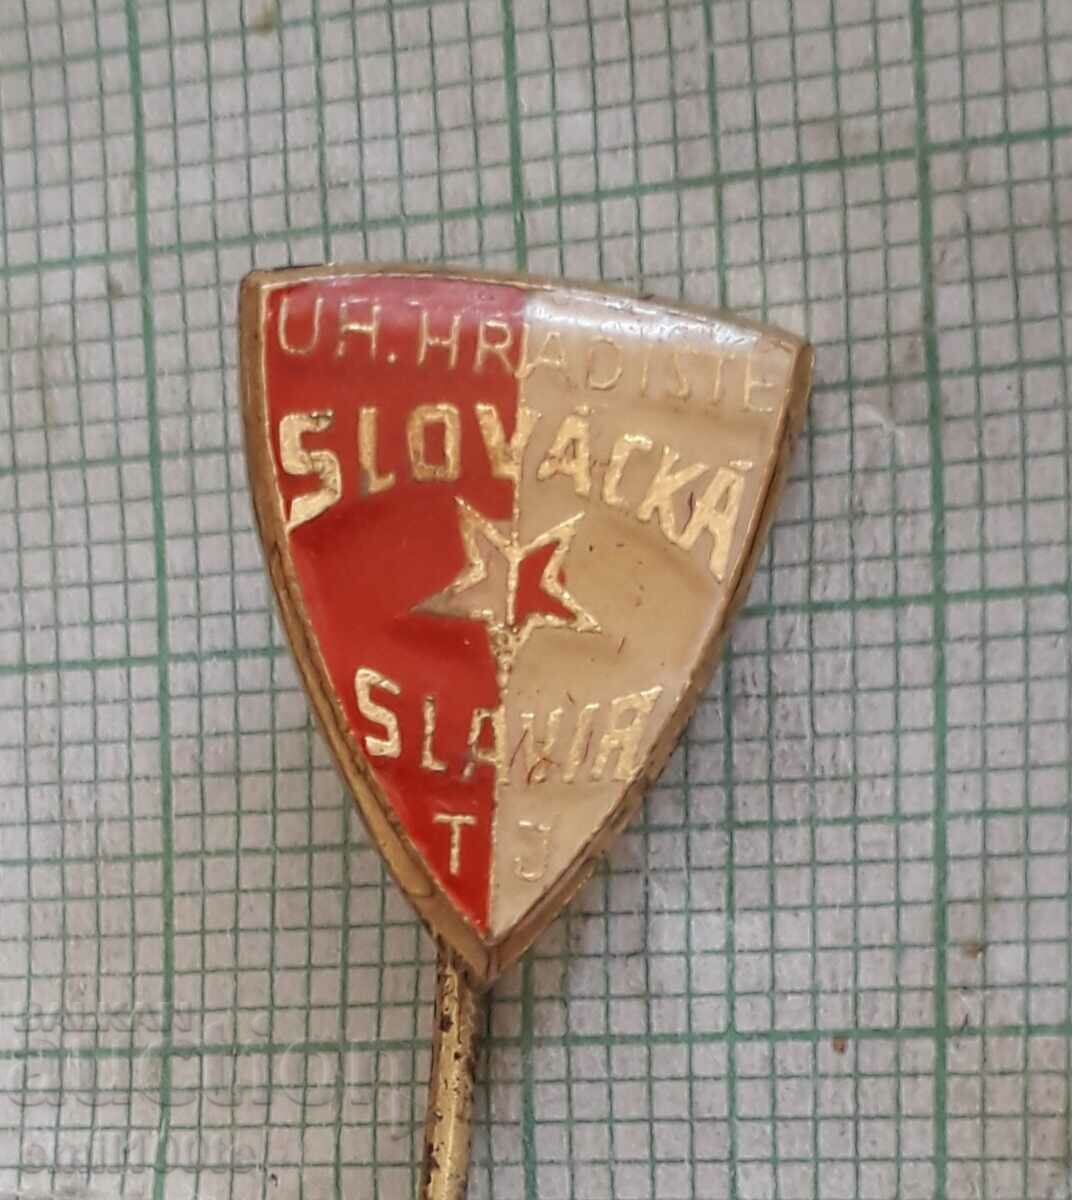 Σήμα - Ποδοσφαιρική ομάδα Slovacka Slavia Τσεχία